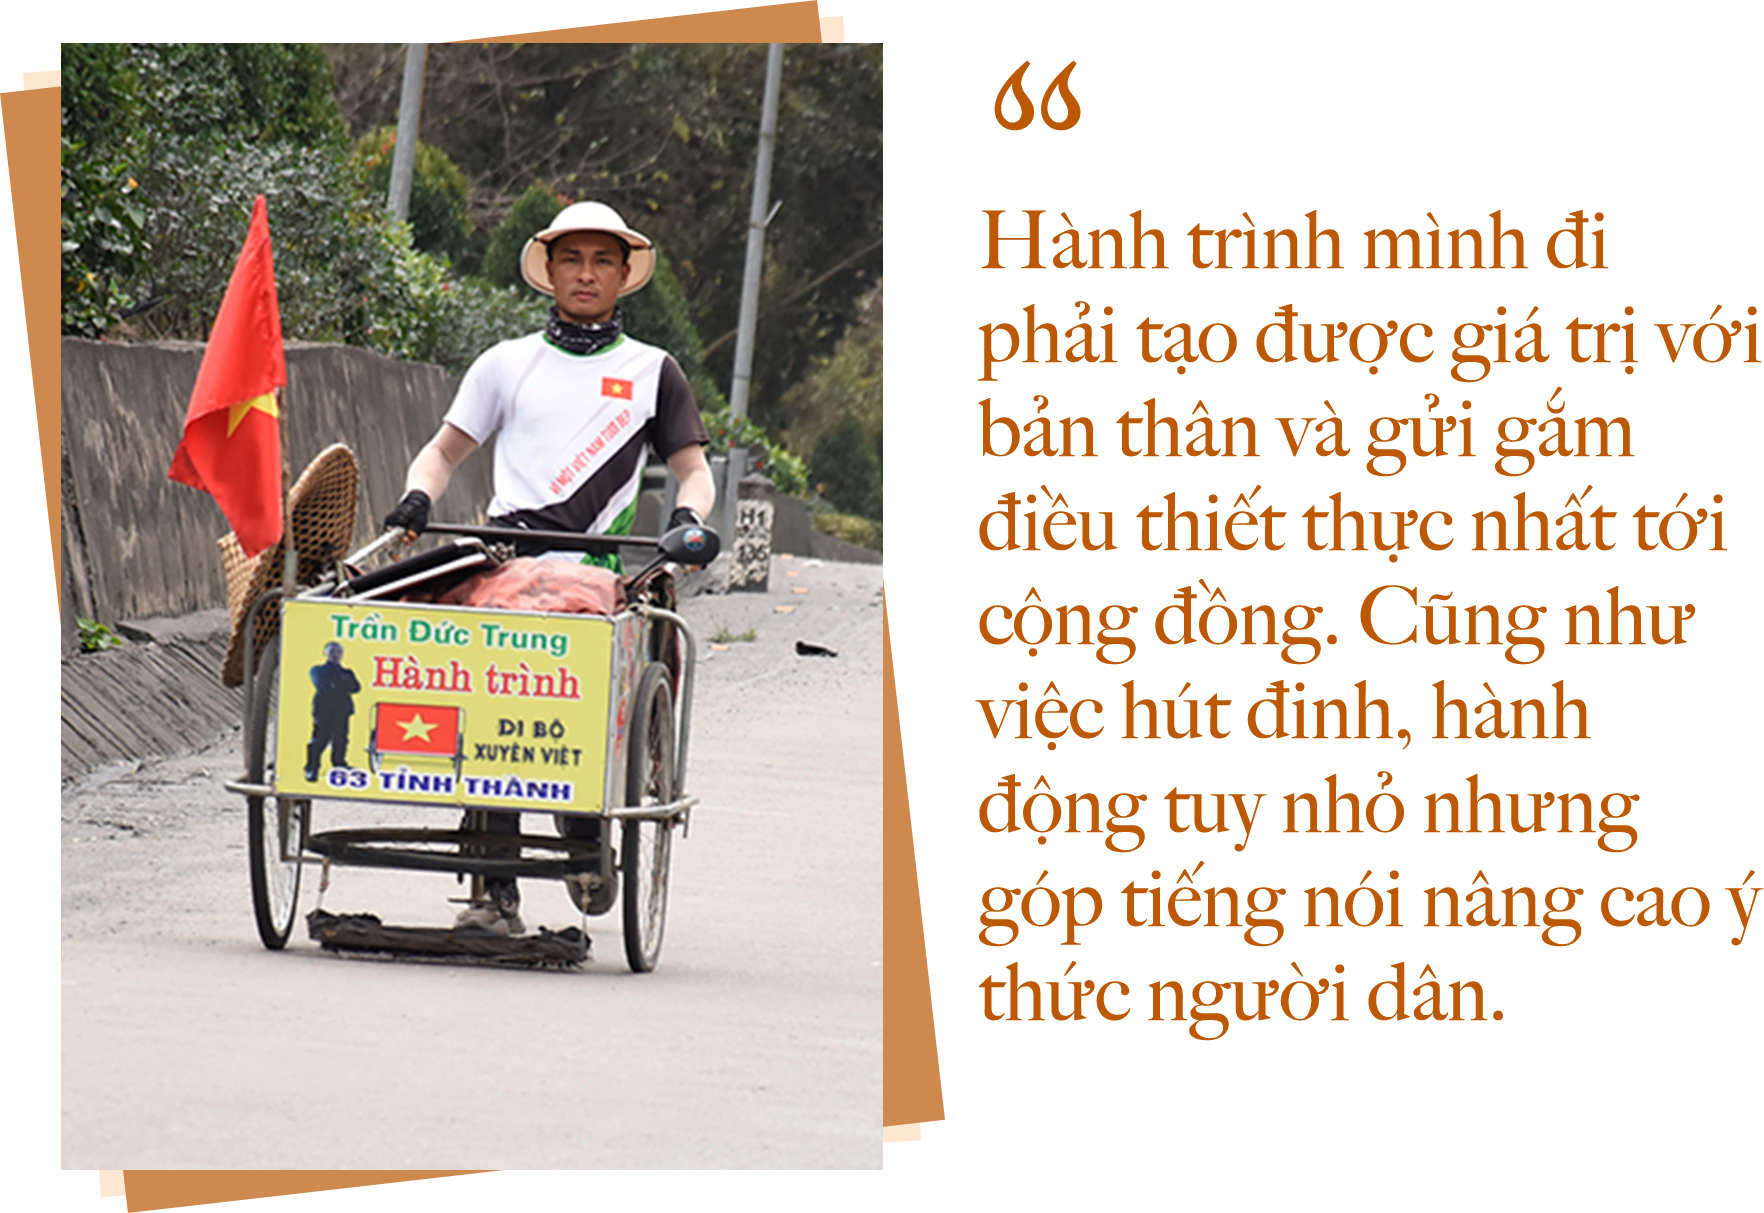 Hành trình 2 năm đi bộ hút đinh xuyên Việt của chàng trai xứ Nghệ - 10